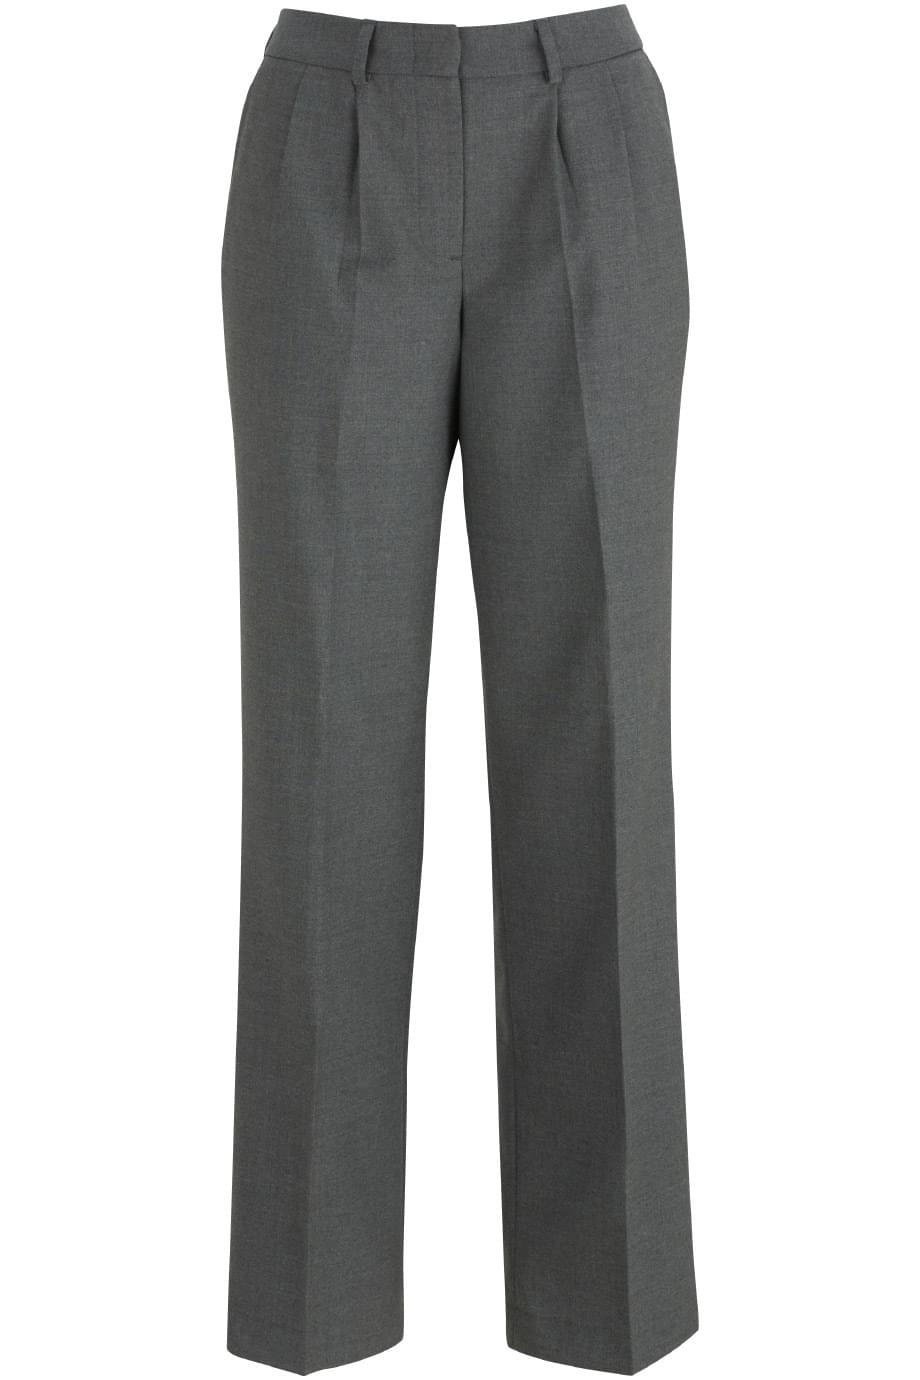 Edwards Women's Pleated Front Pants - Uniform Sales Inc.